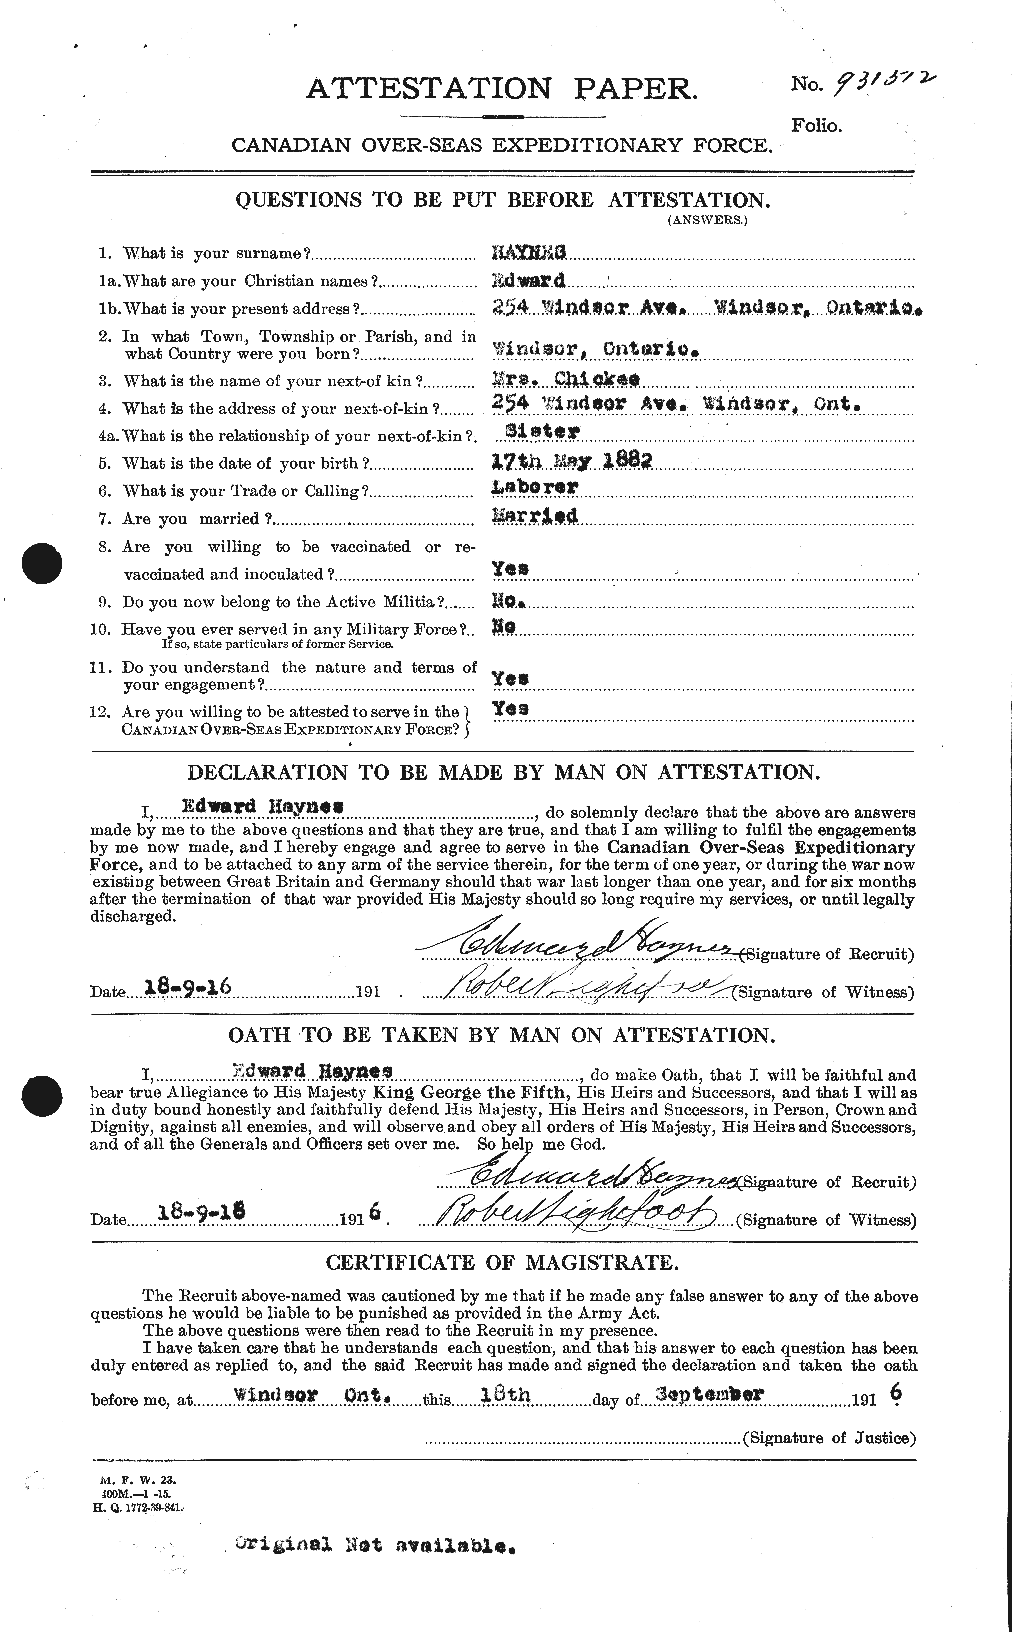 Dossiers du Personnel de la Première Guerre mondiale - CEC 384341a